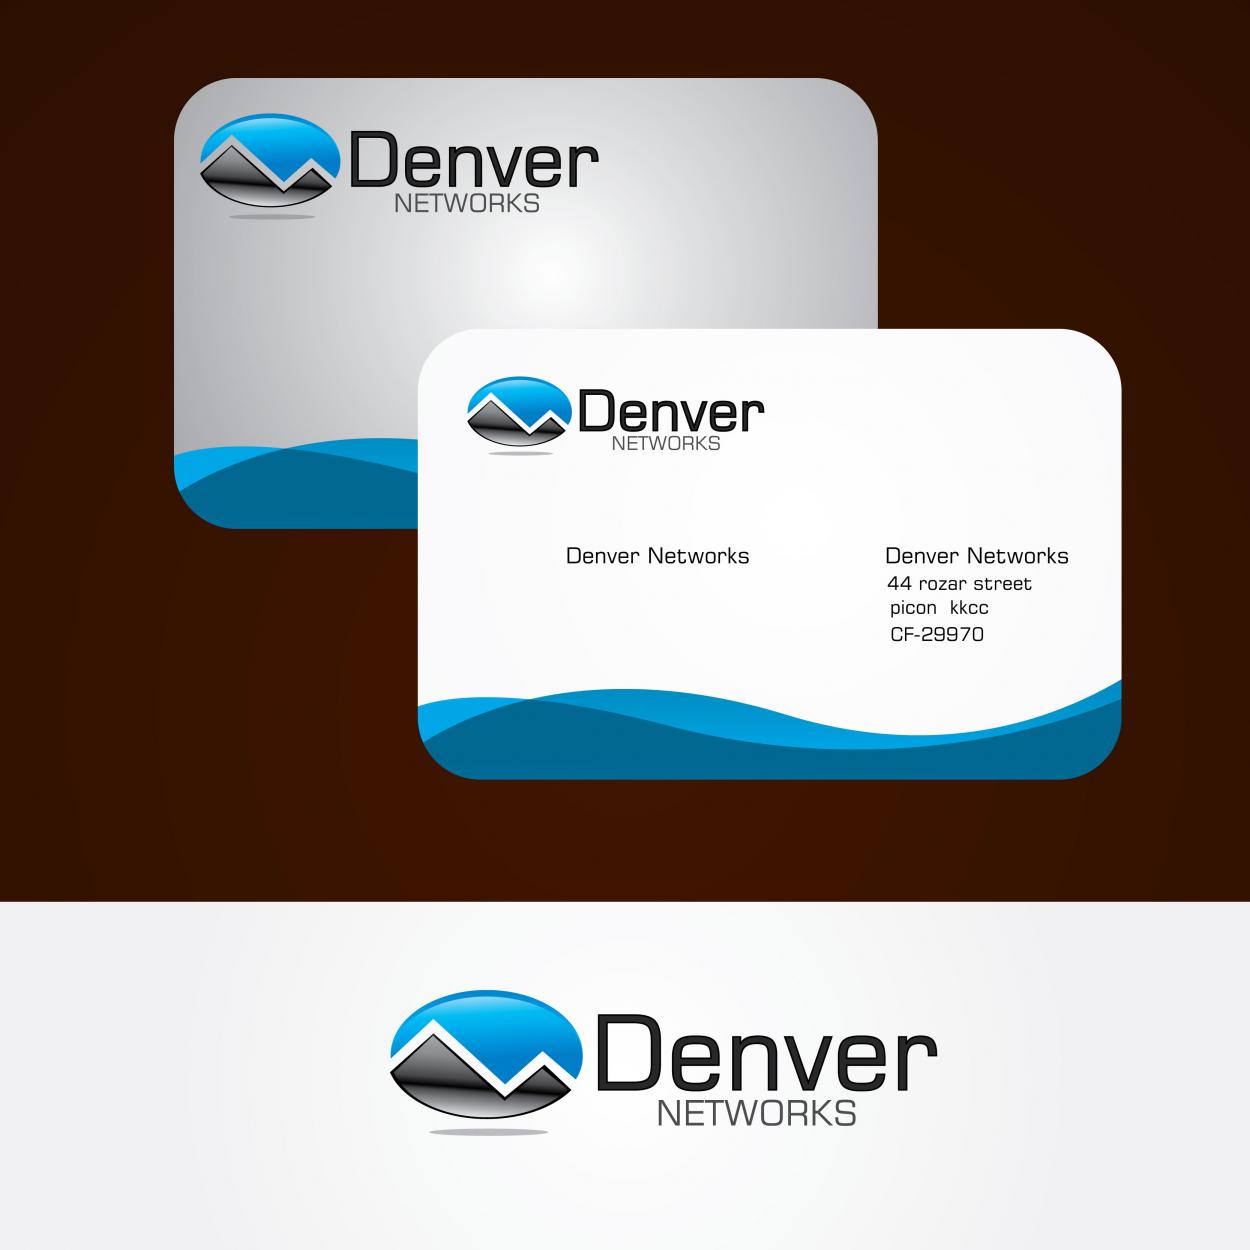 Business Card & Stationery Design entry 91448 submitted by maadezine to the Business Card & Stationery Design for Denver Networks run by denvernetworks